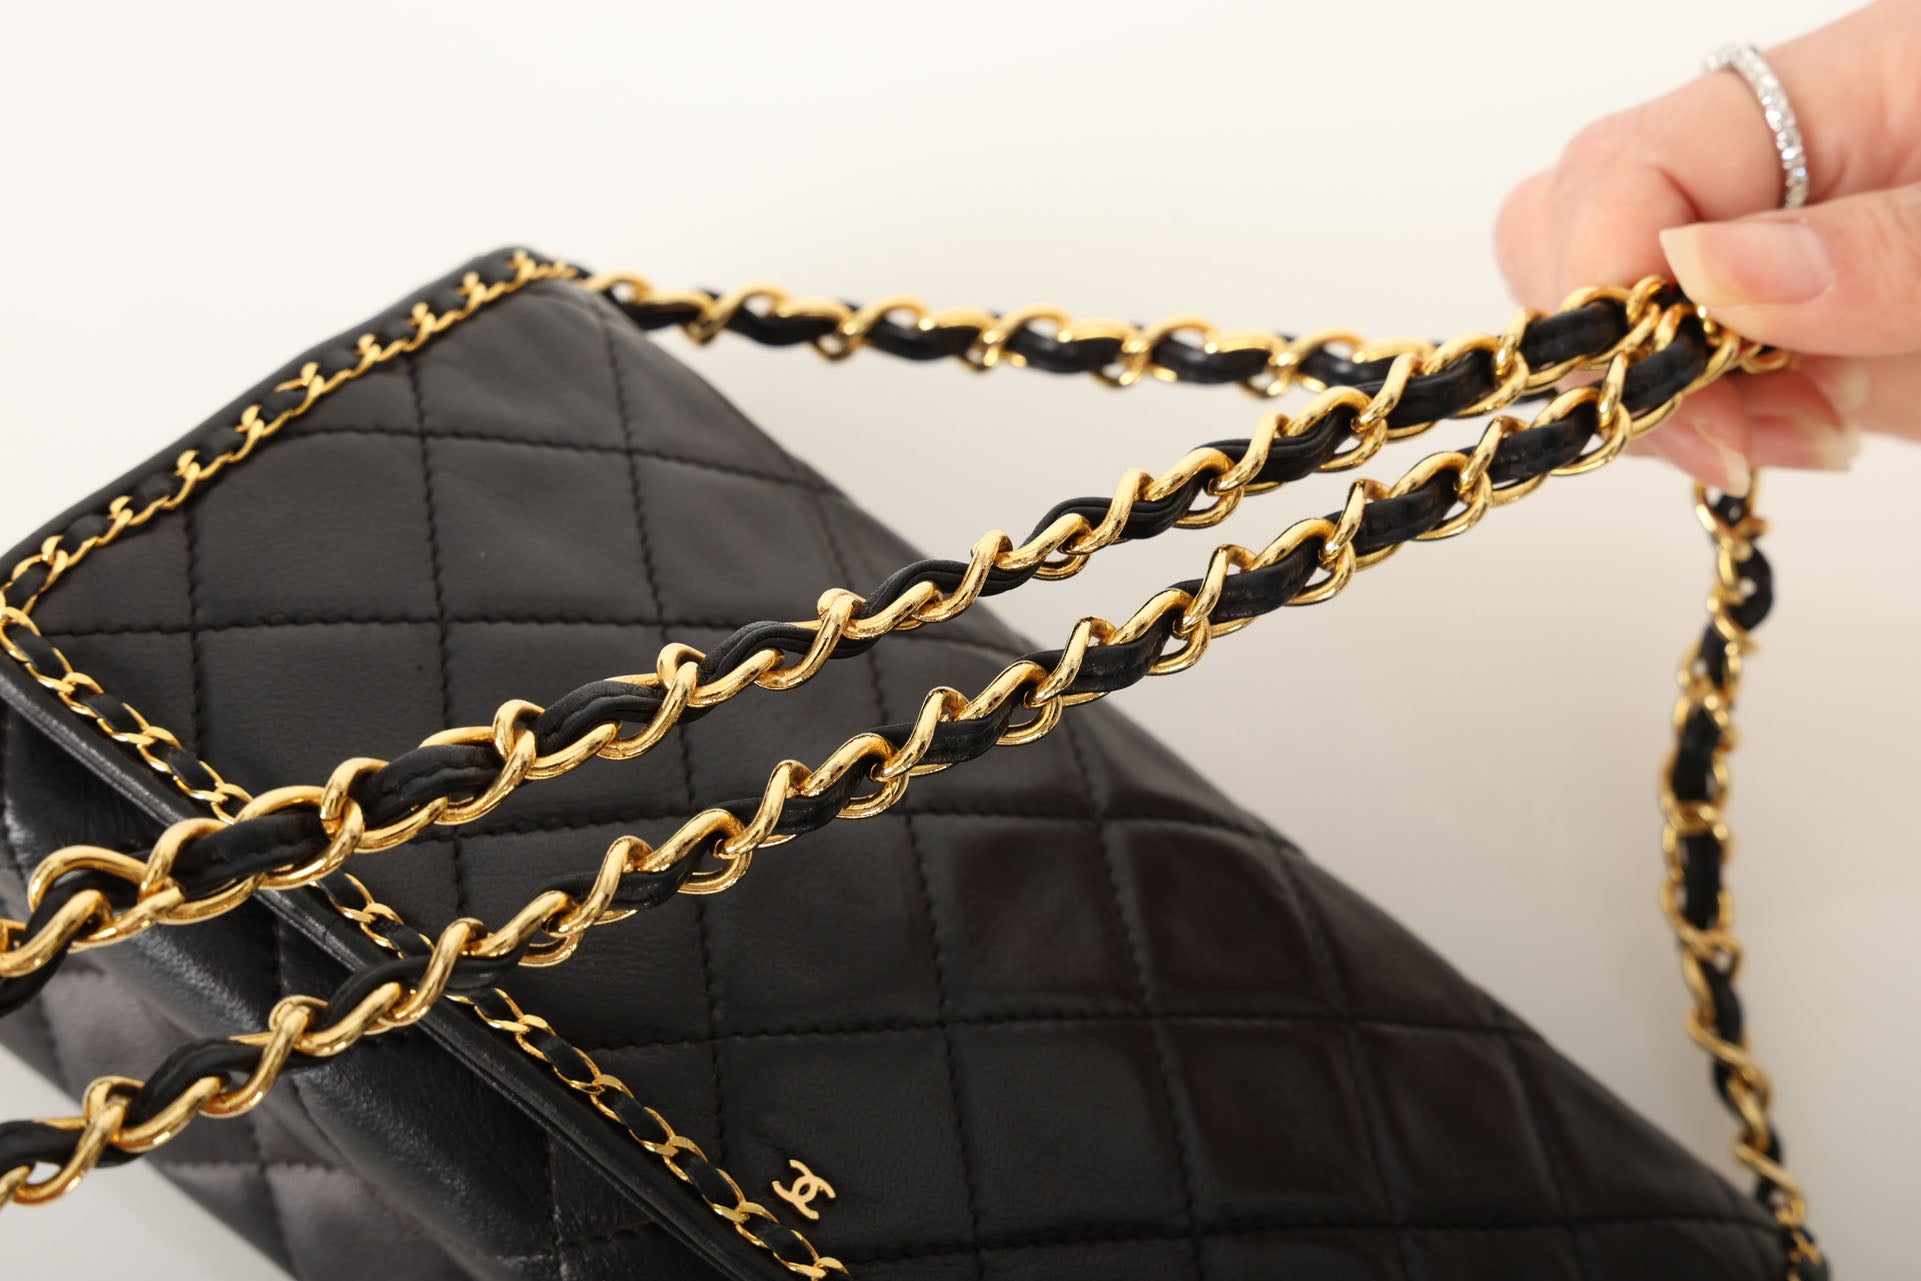 Ultra-Rare Chanel 1986 Lambskin Chain Flap Bag